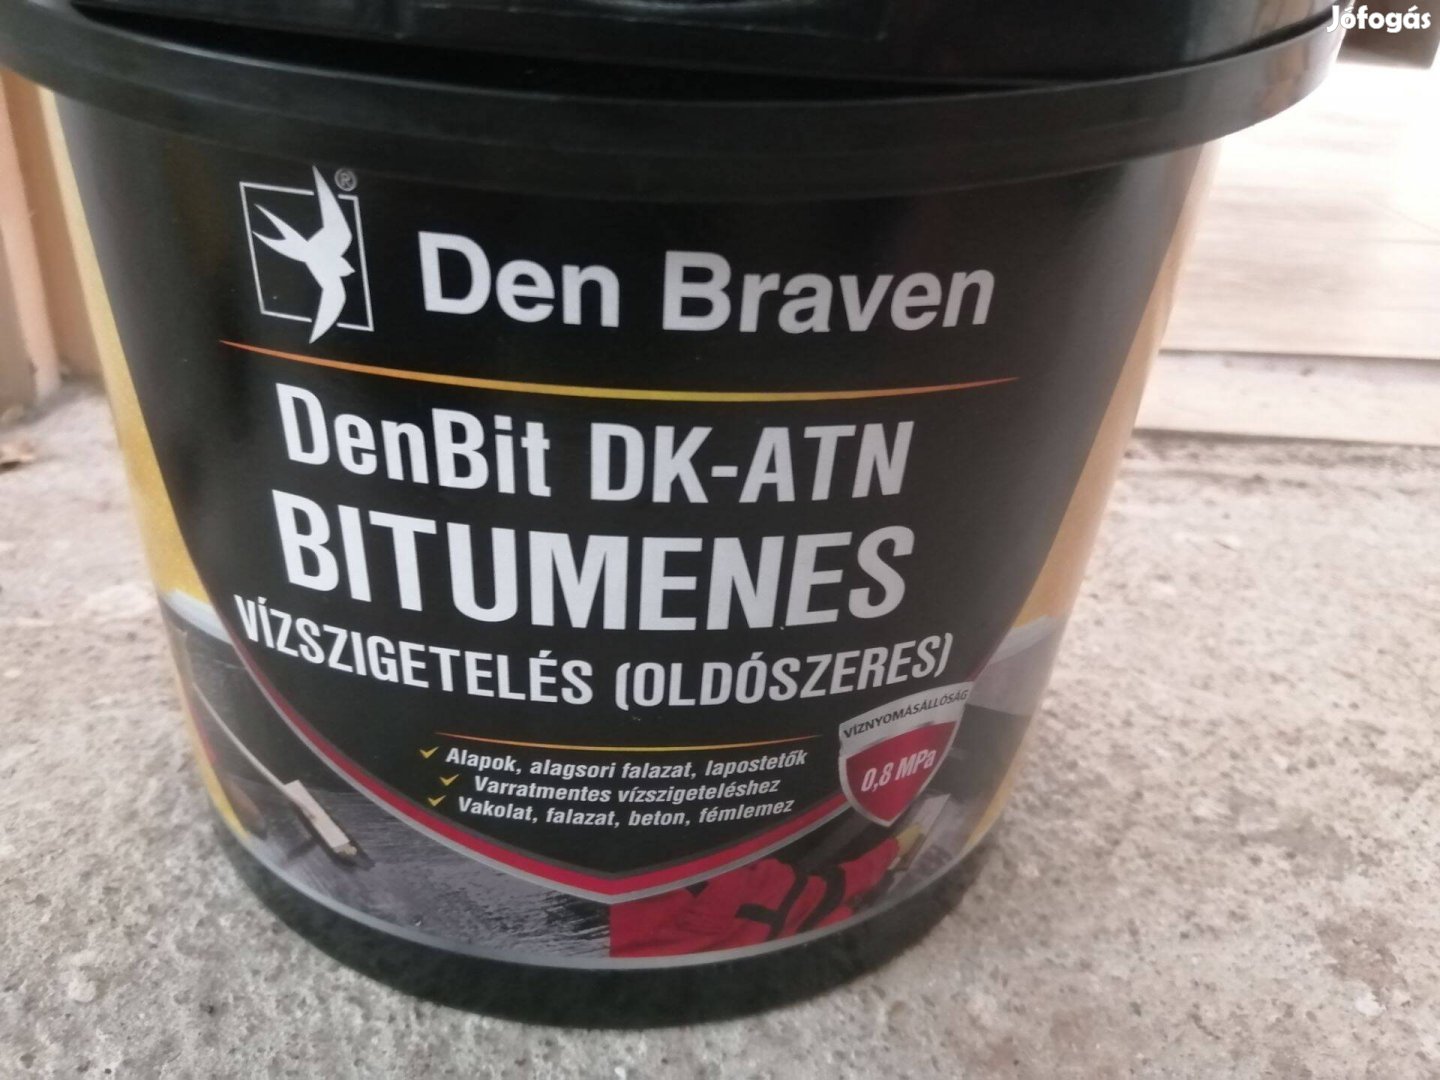 Denbit DK-ATN Bitumenes vízszigetelés (oldószeres) 4,5 kg